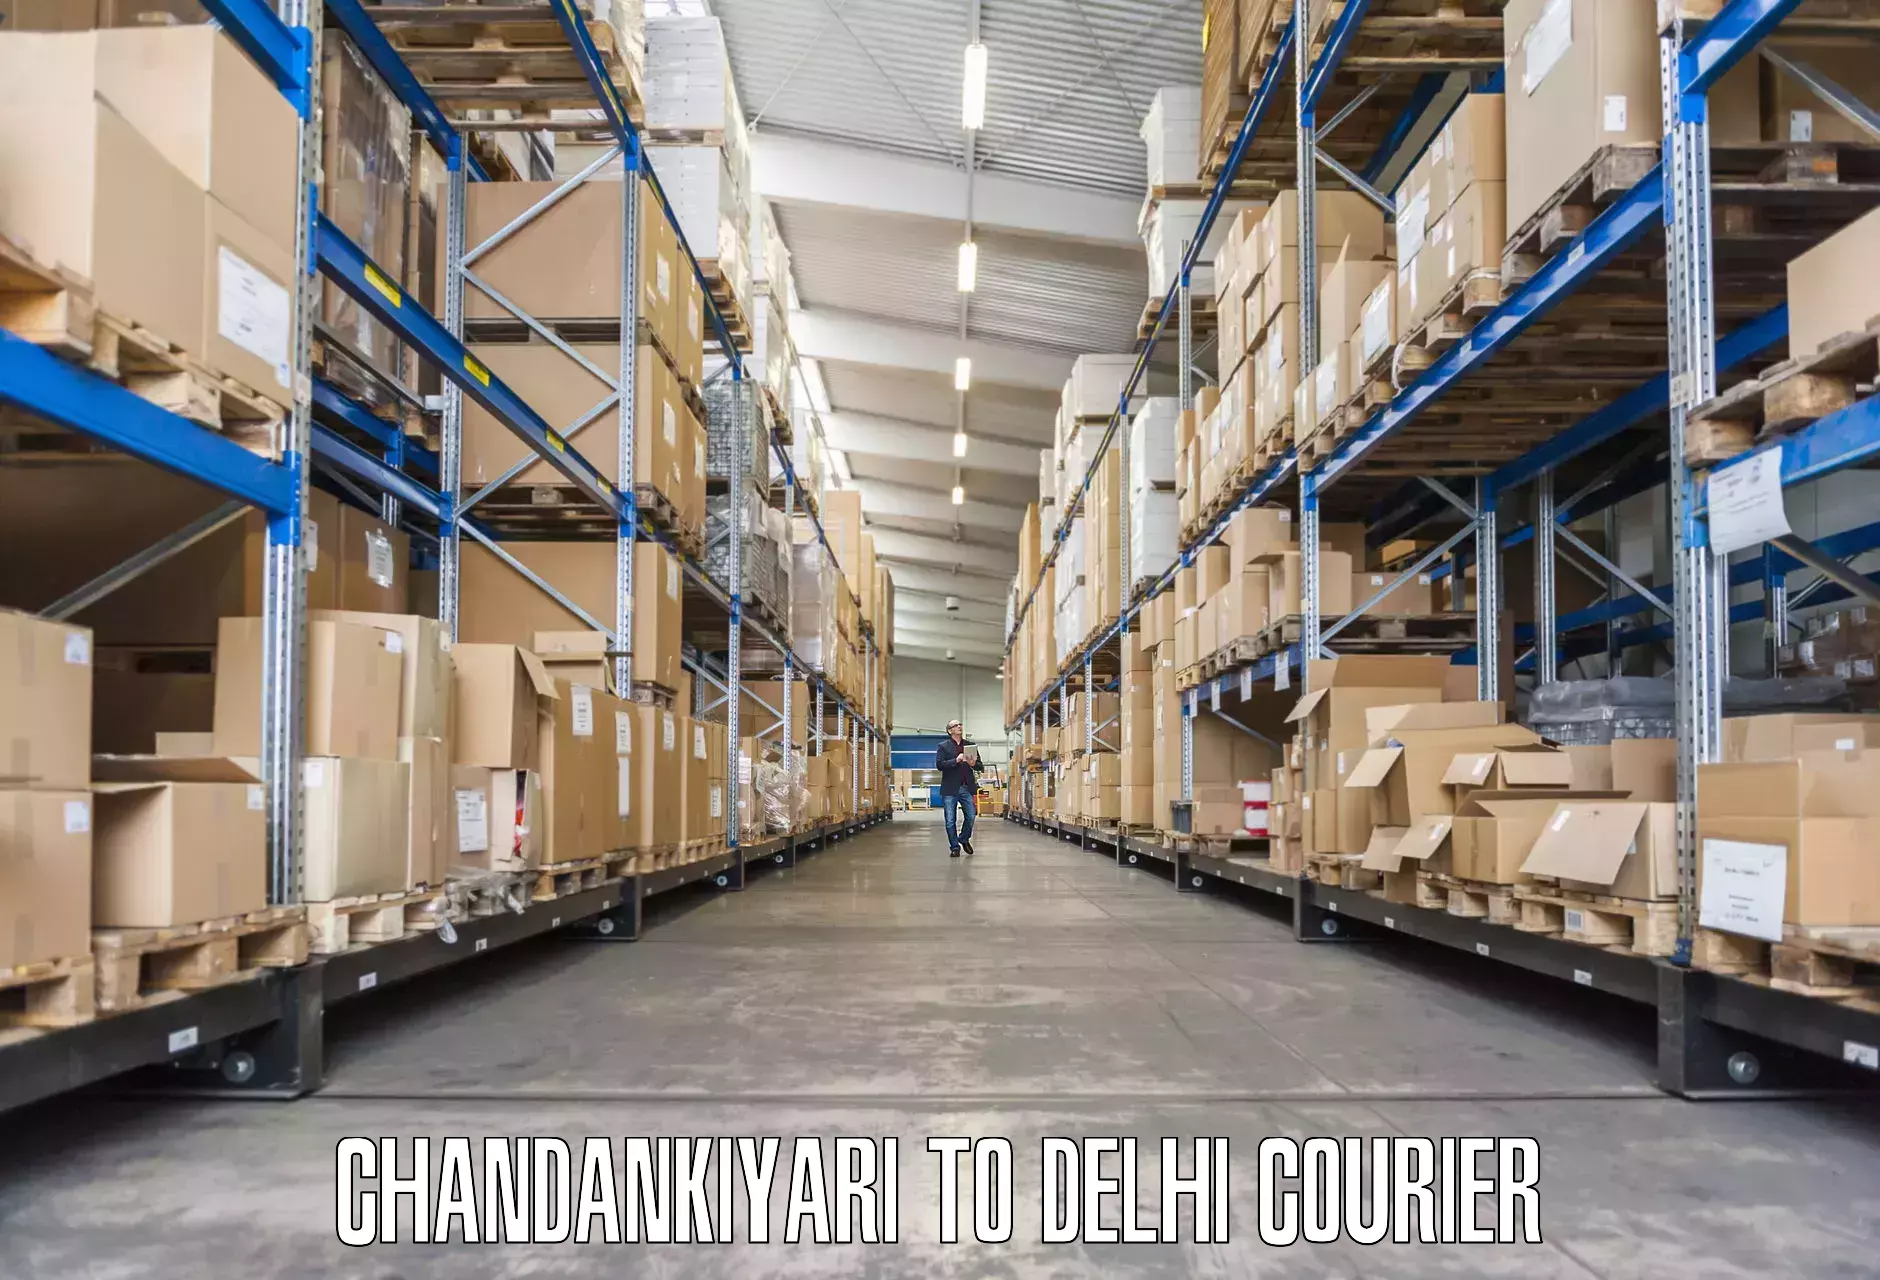 Dependable household movers Chandankiyari to Jawaharlal Nehru University New Delhi